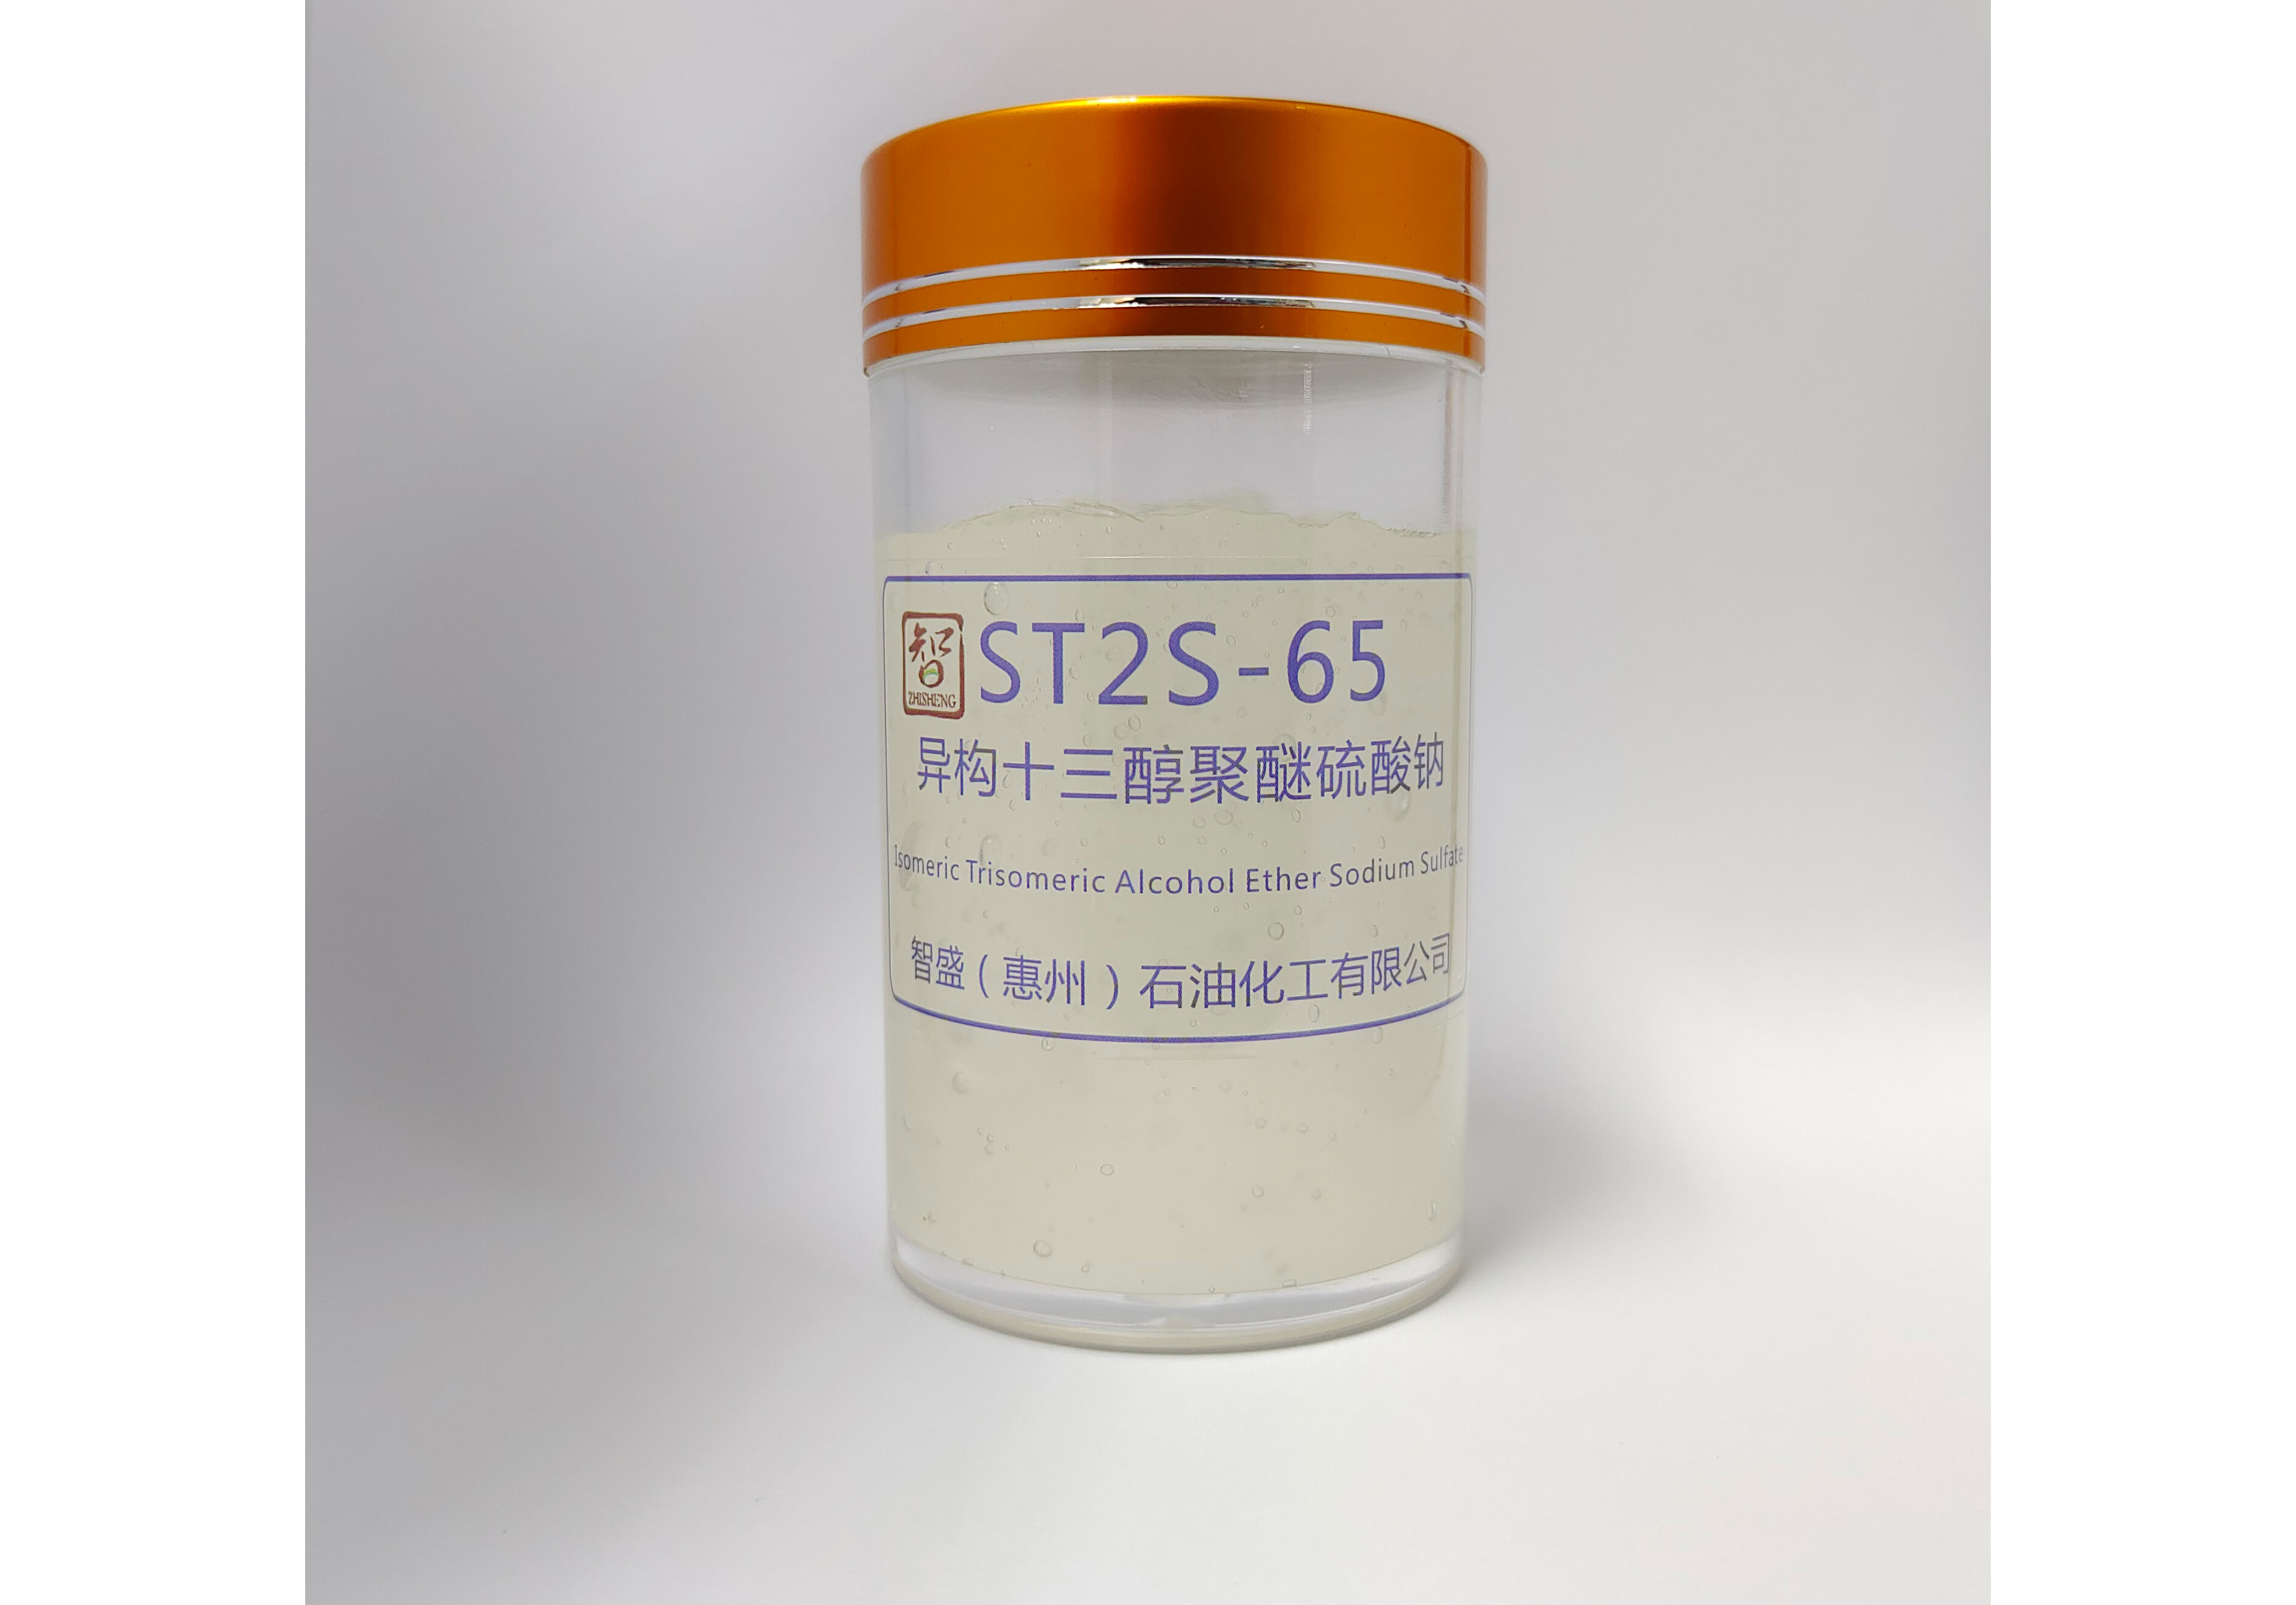  j  异构十三醇聚醚硫酸钠（ST2S-65）